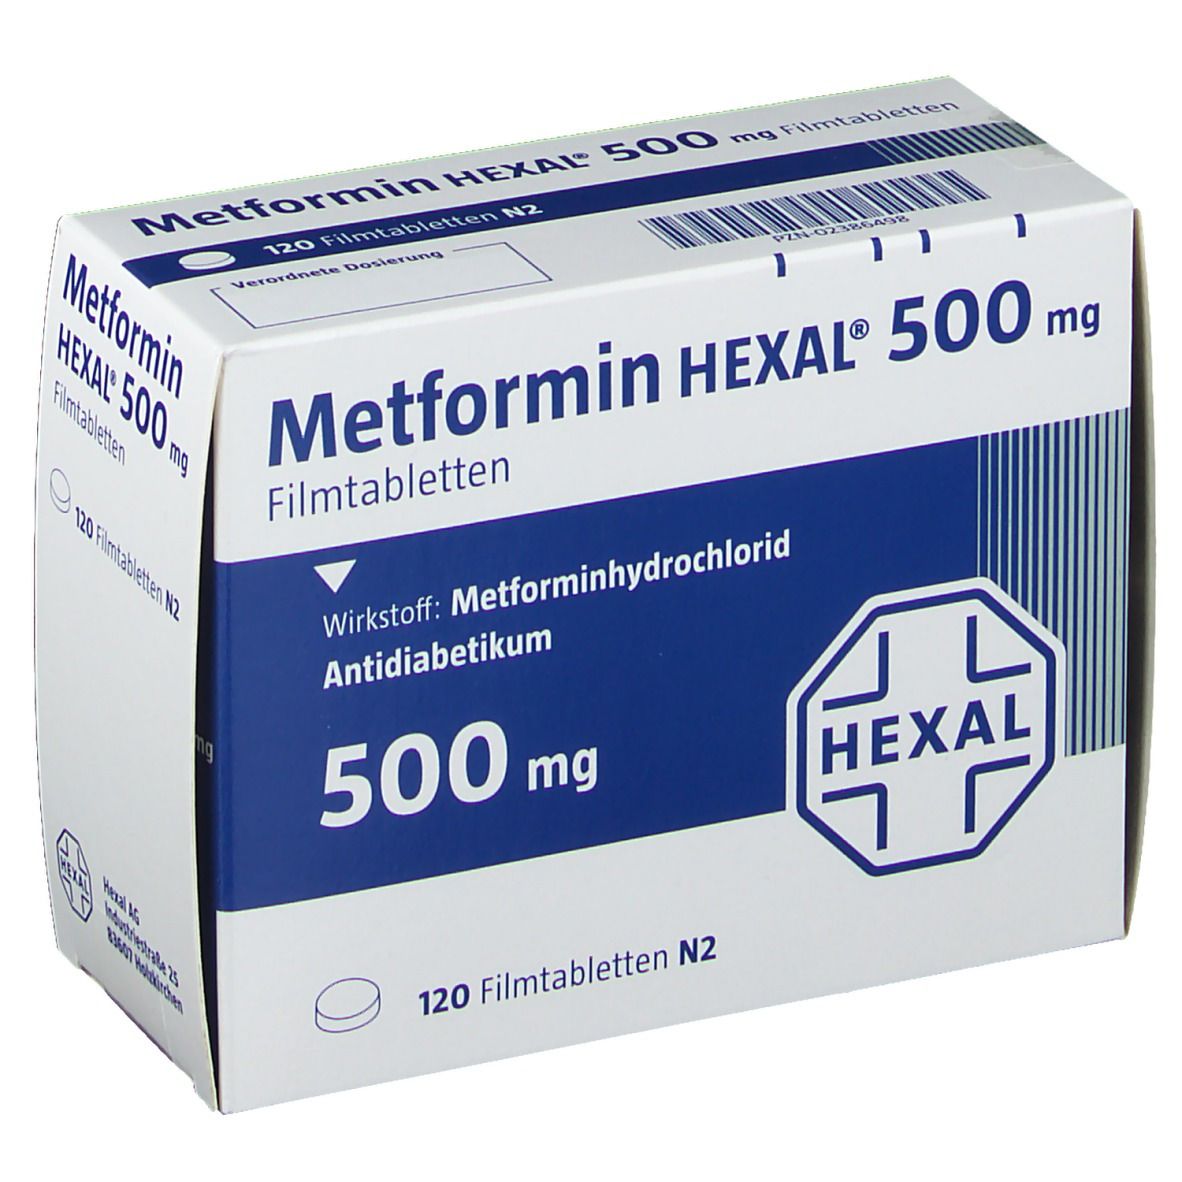 Метформин производители отзывы. Metformin Hexal 1000 мг. Метформин 500 мг производитель. Таблетки метформин 500мг. Метформин 500 производители.